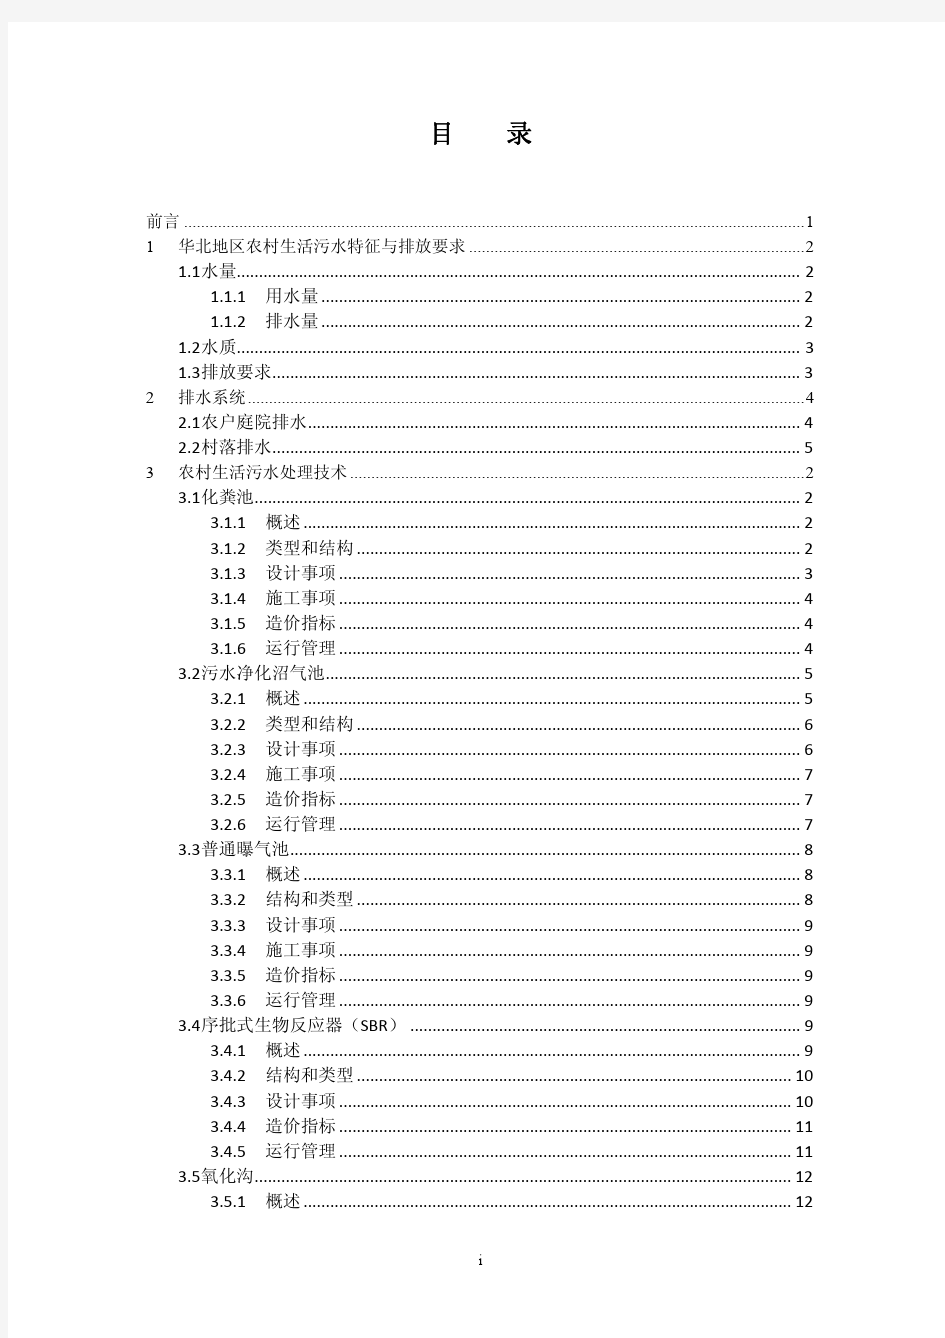 3、华北地区农村生活污水处理技术指南